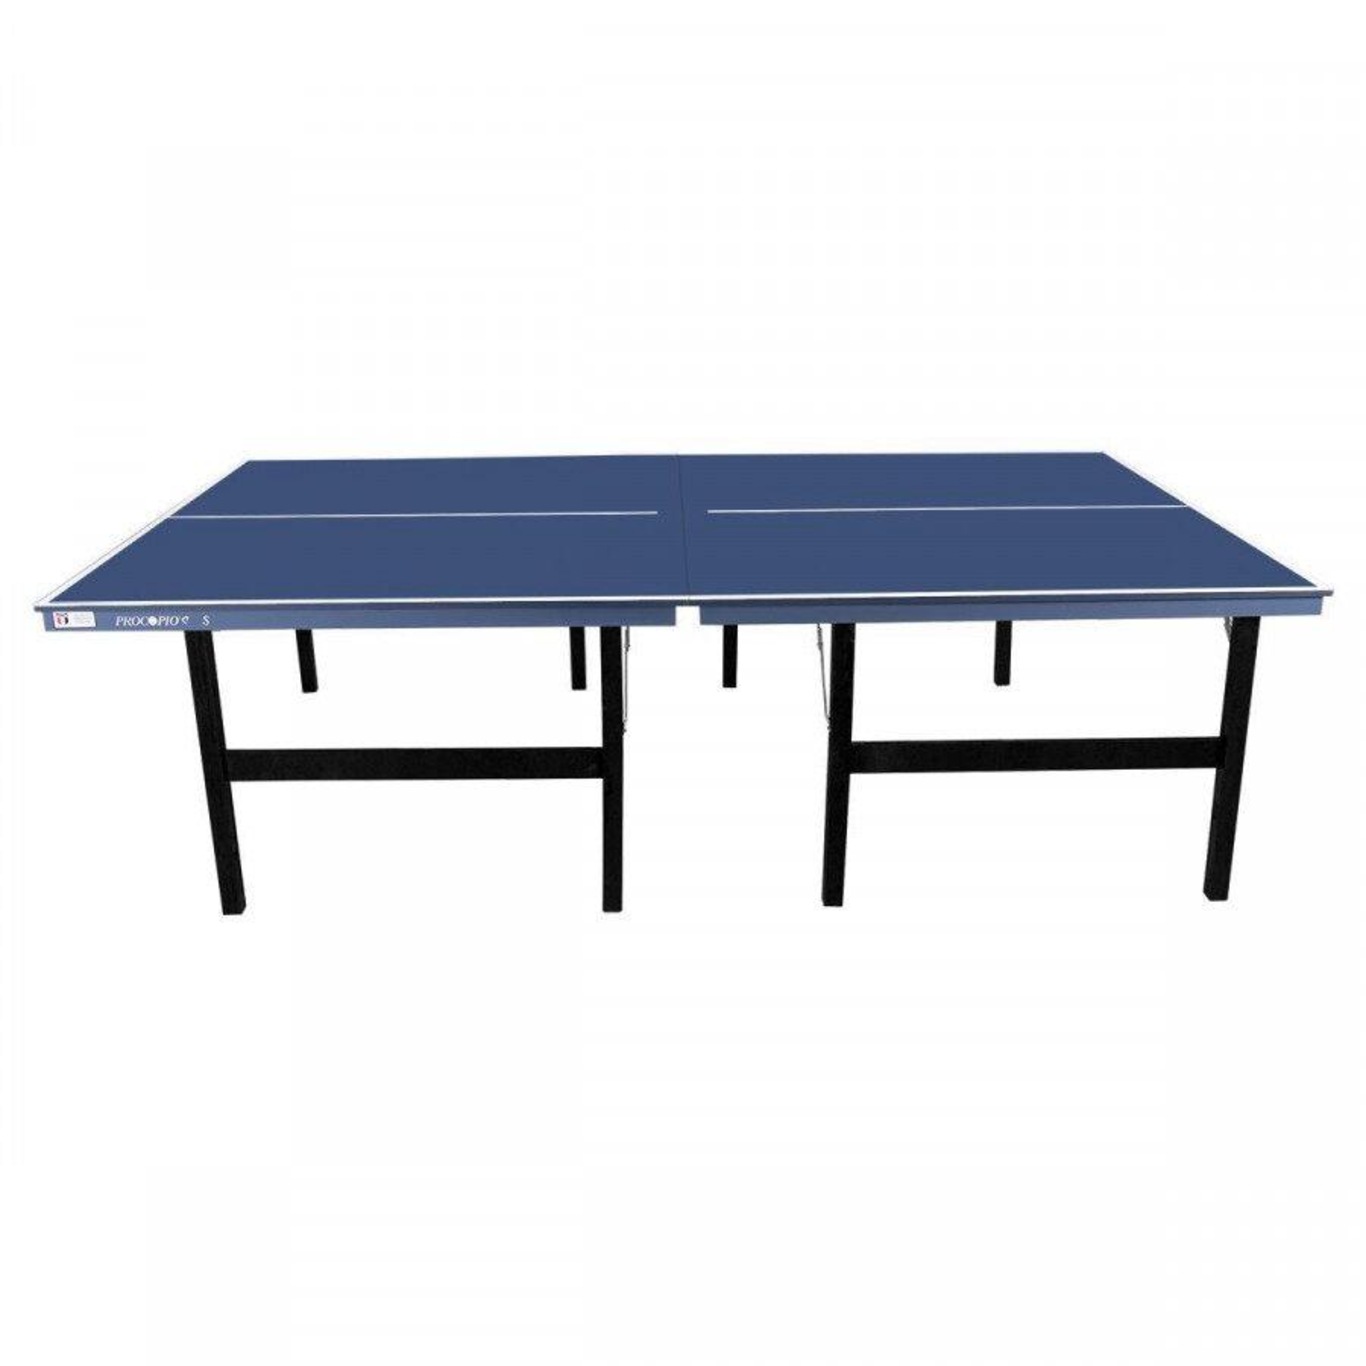 Medida oficial da mesa ping pong